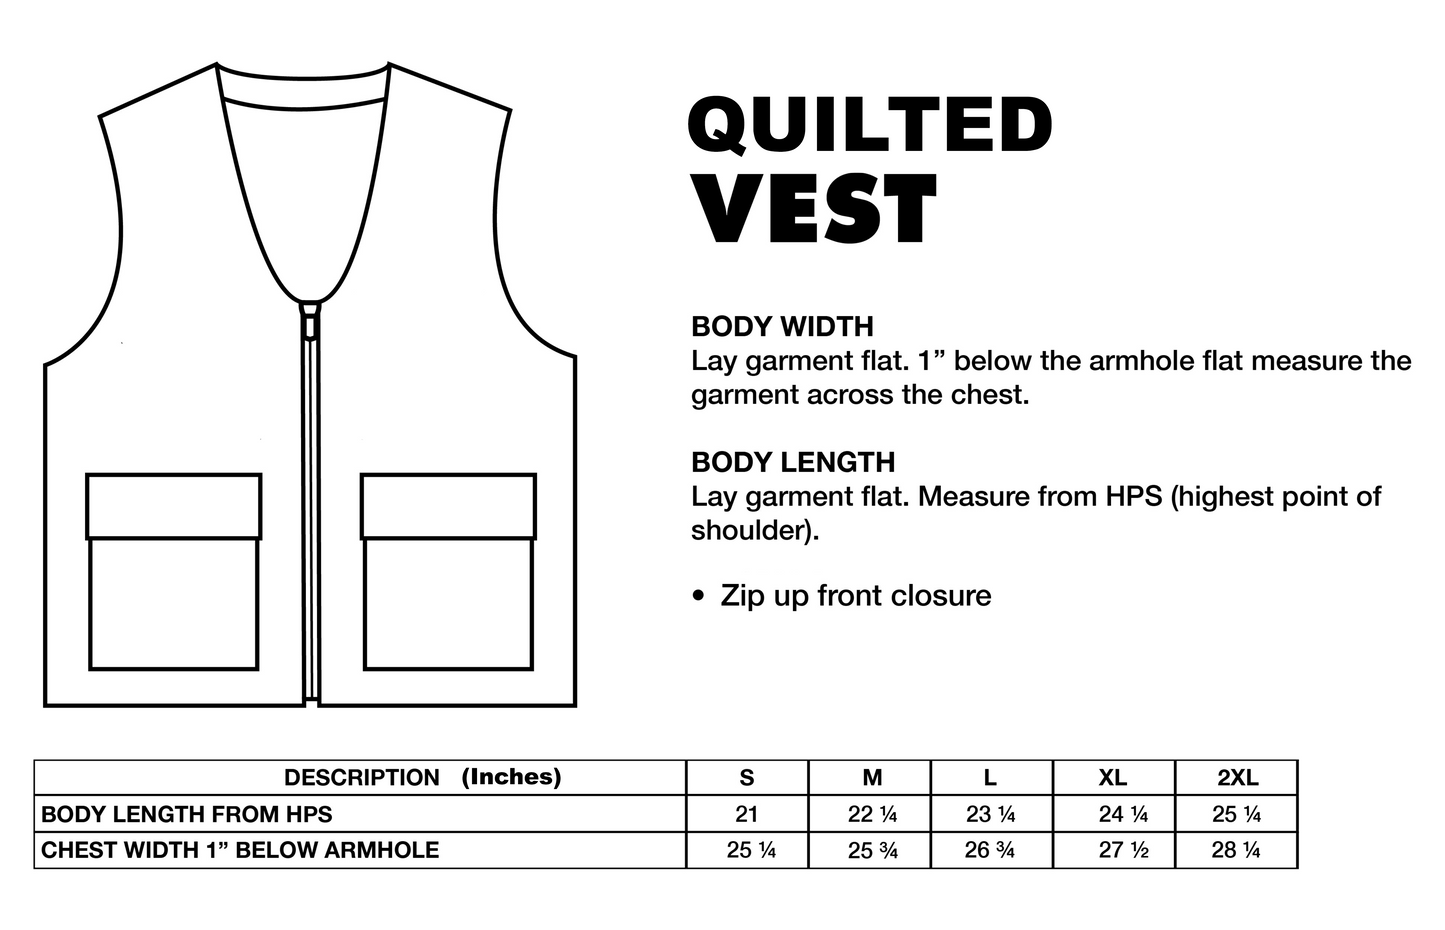 Quilted Zip-Up Vest (BLACK)